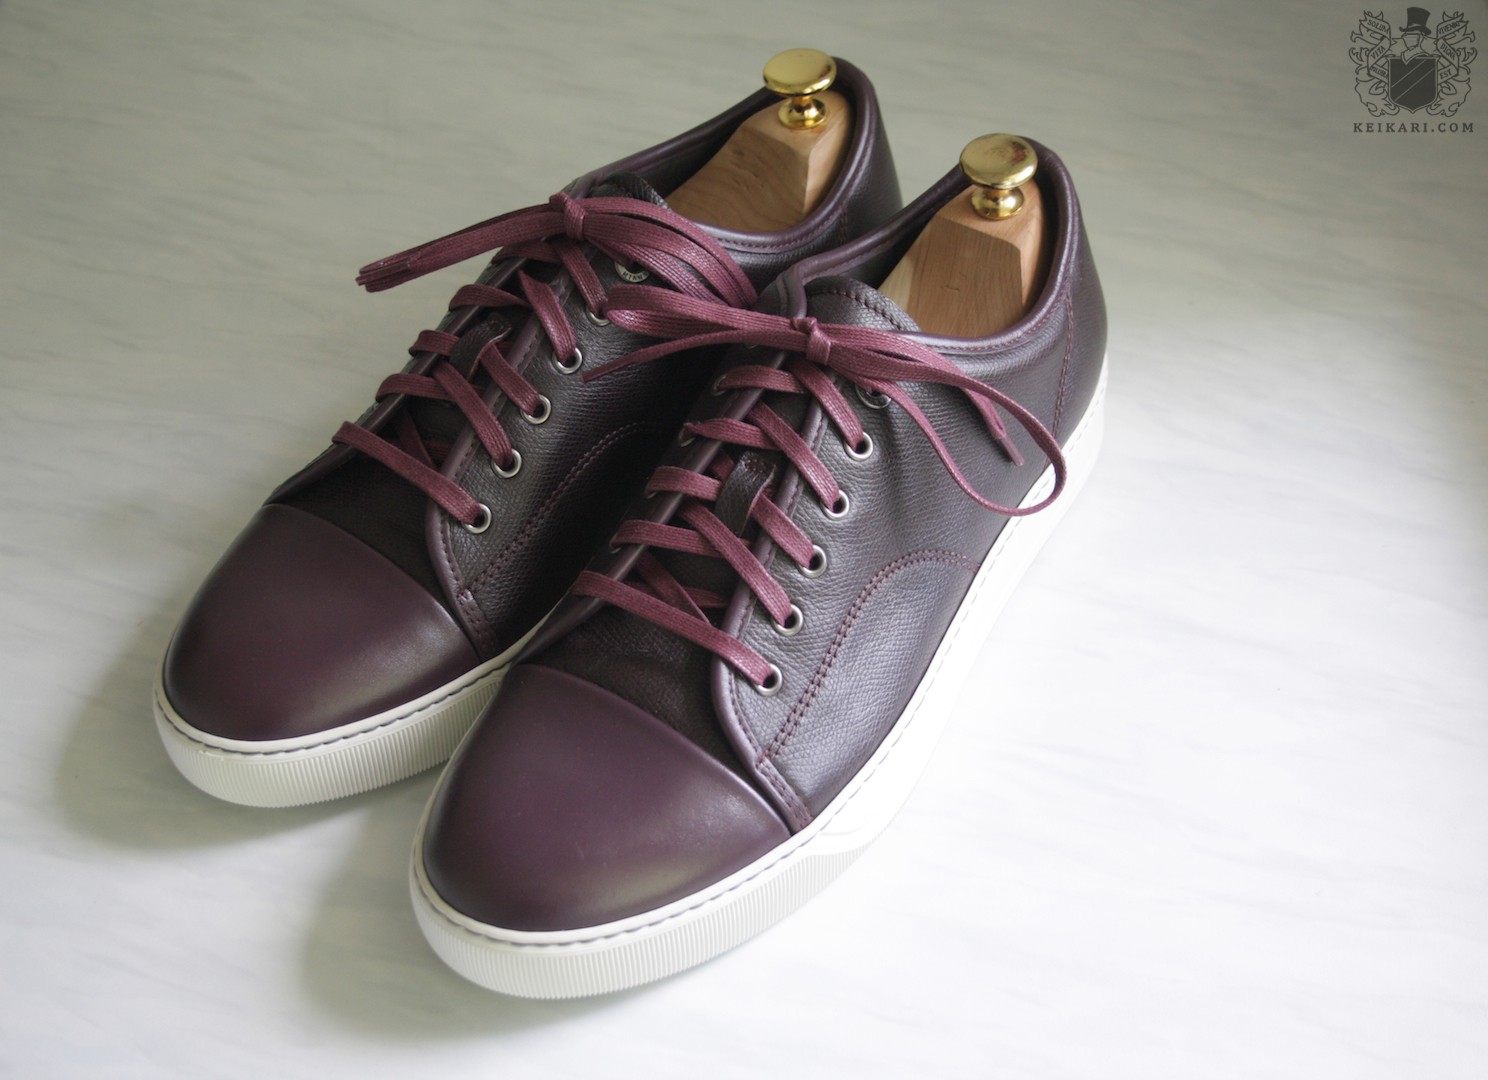 Anatomy and review of Lanvin sneakers | Keikari.com